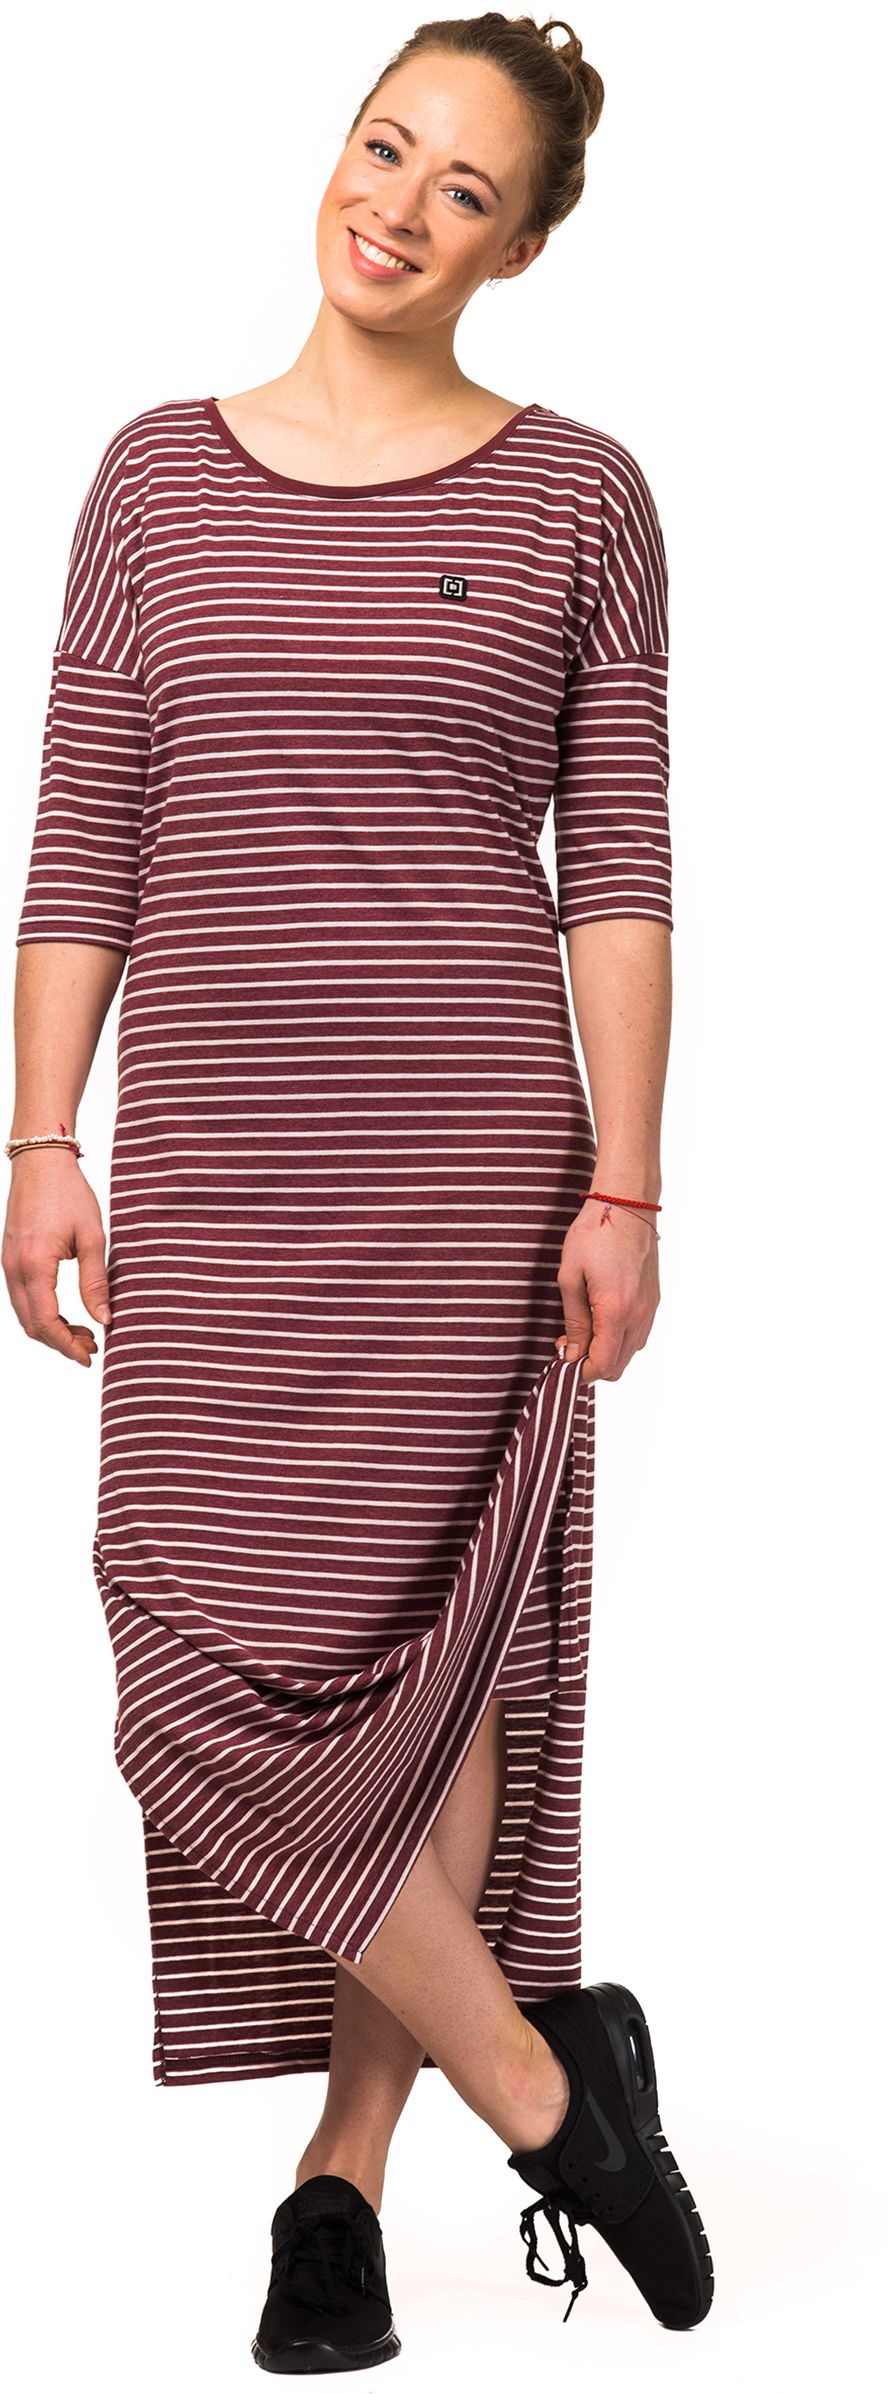 dámské šaty HORSEFEATHERS LILLIAN DRESS (burgundy stripes)